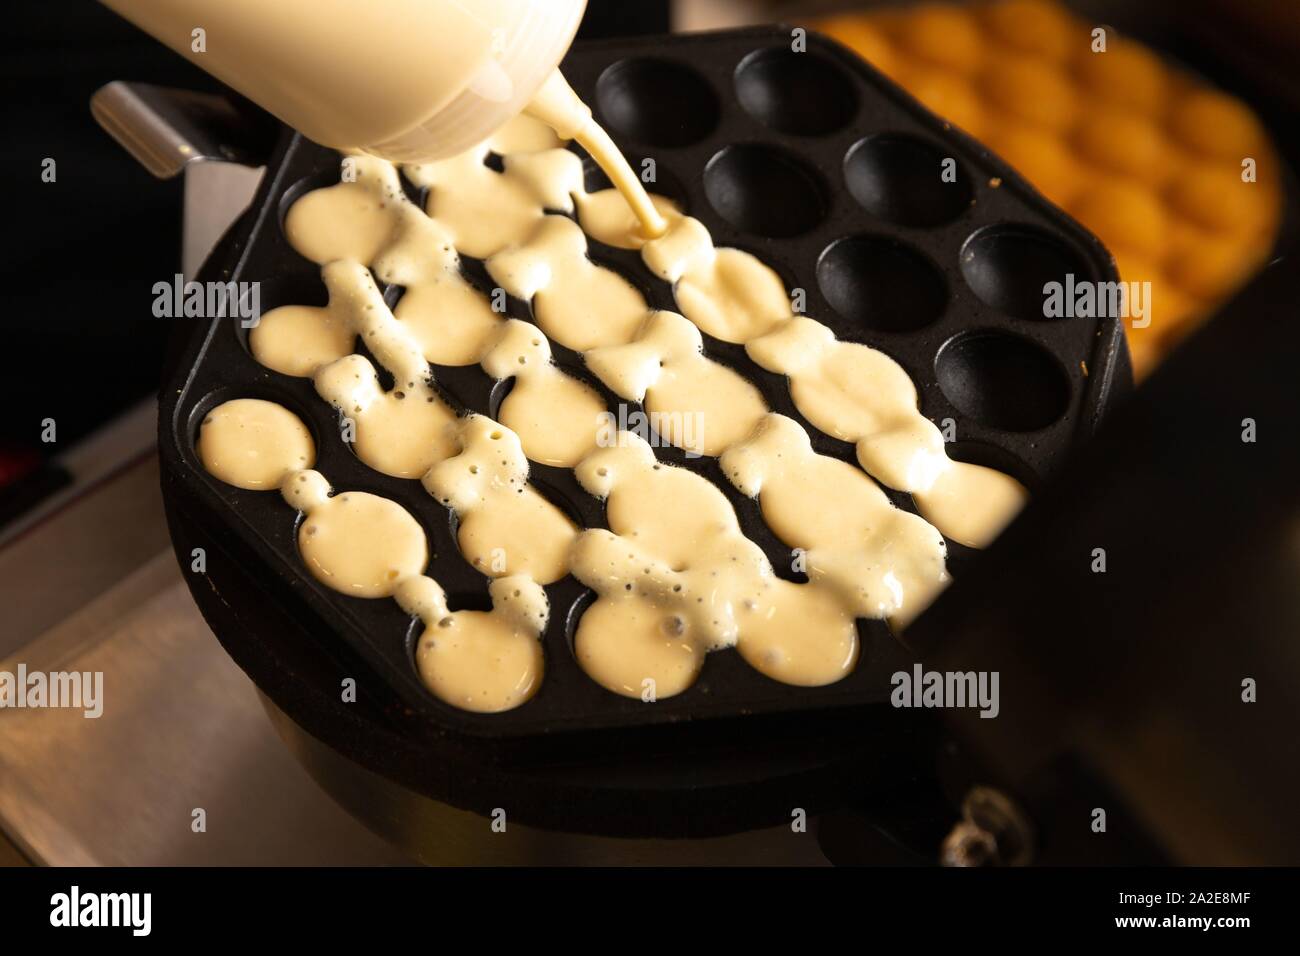 Making waffles on dark waffle iron, action shots Stock Photo